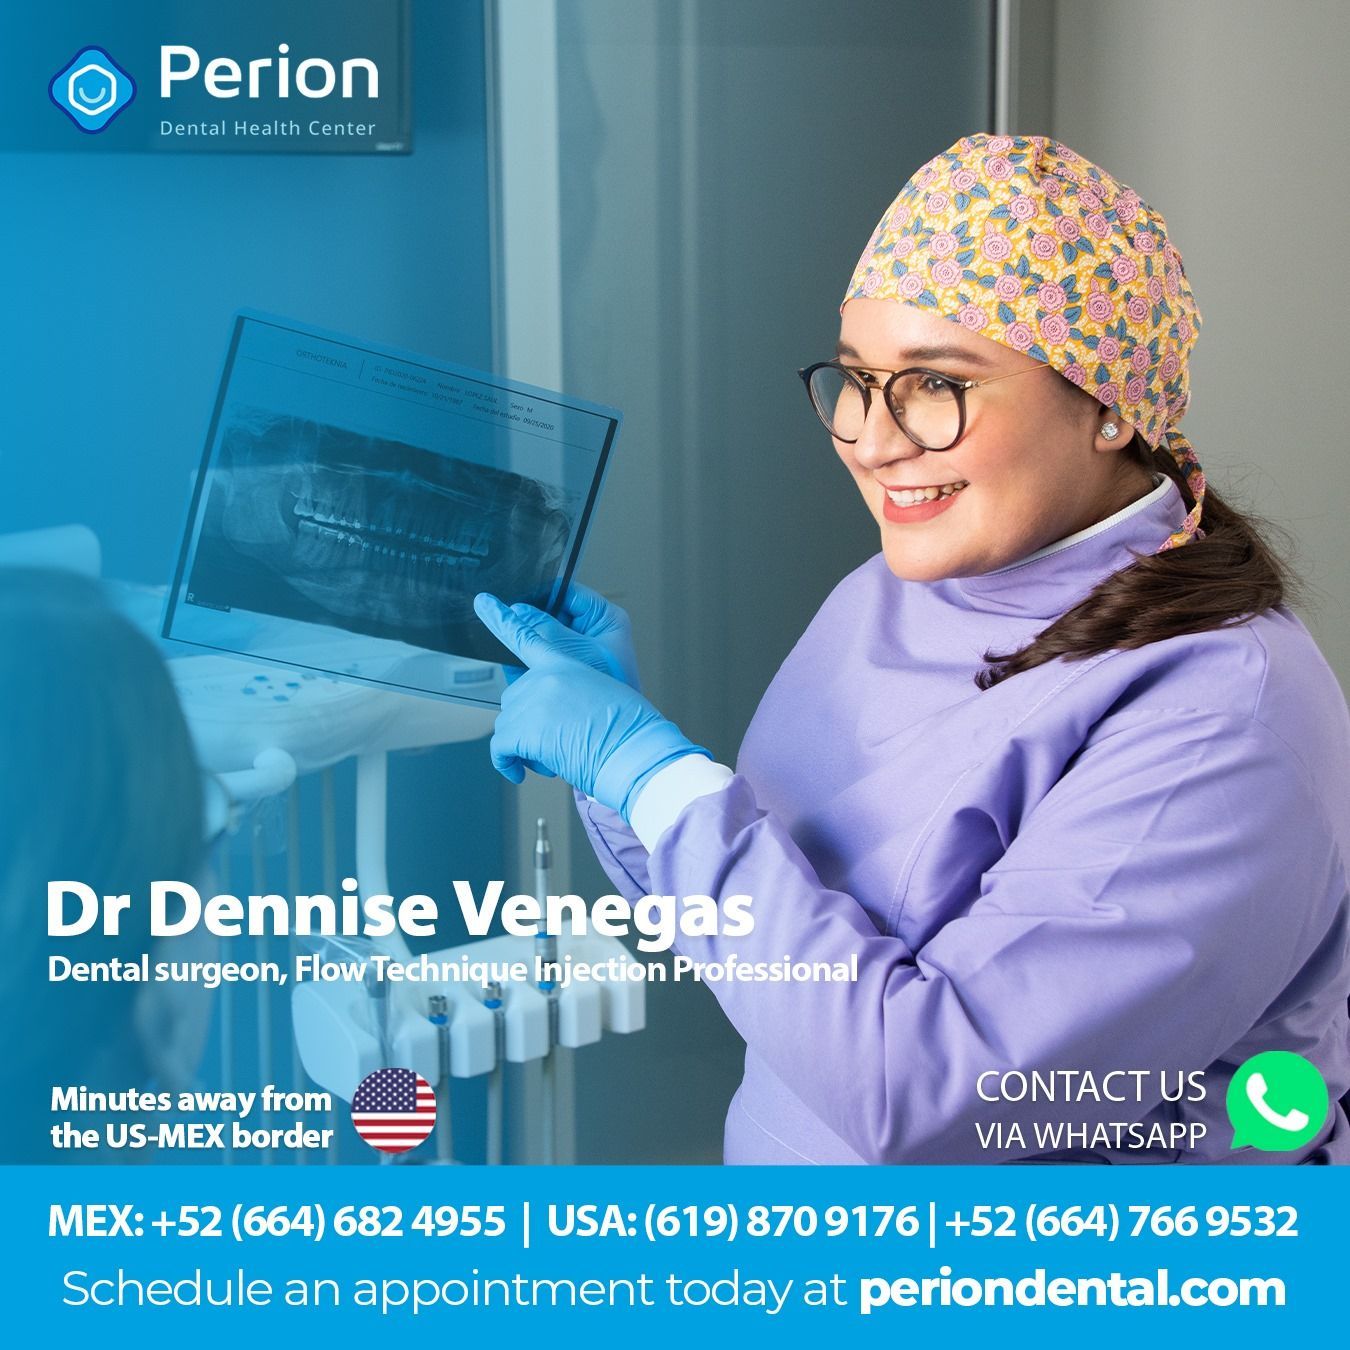 dr. dennise venegas